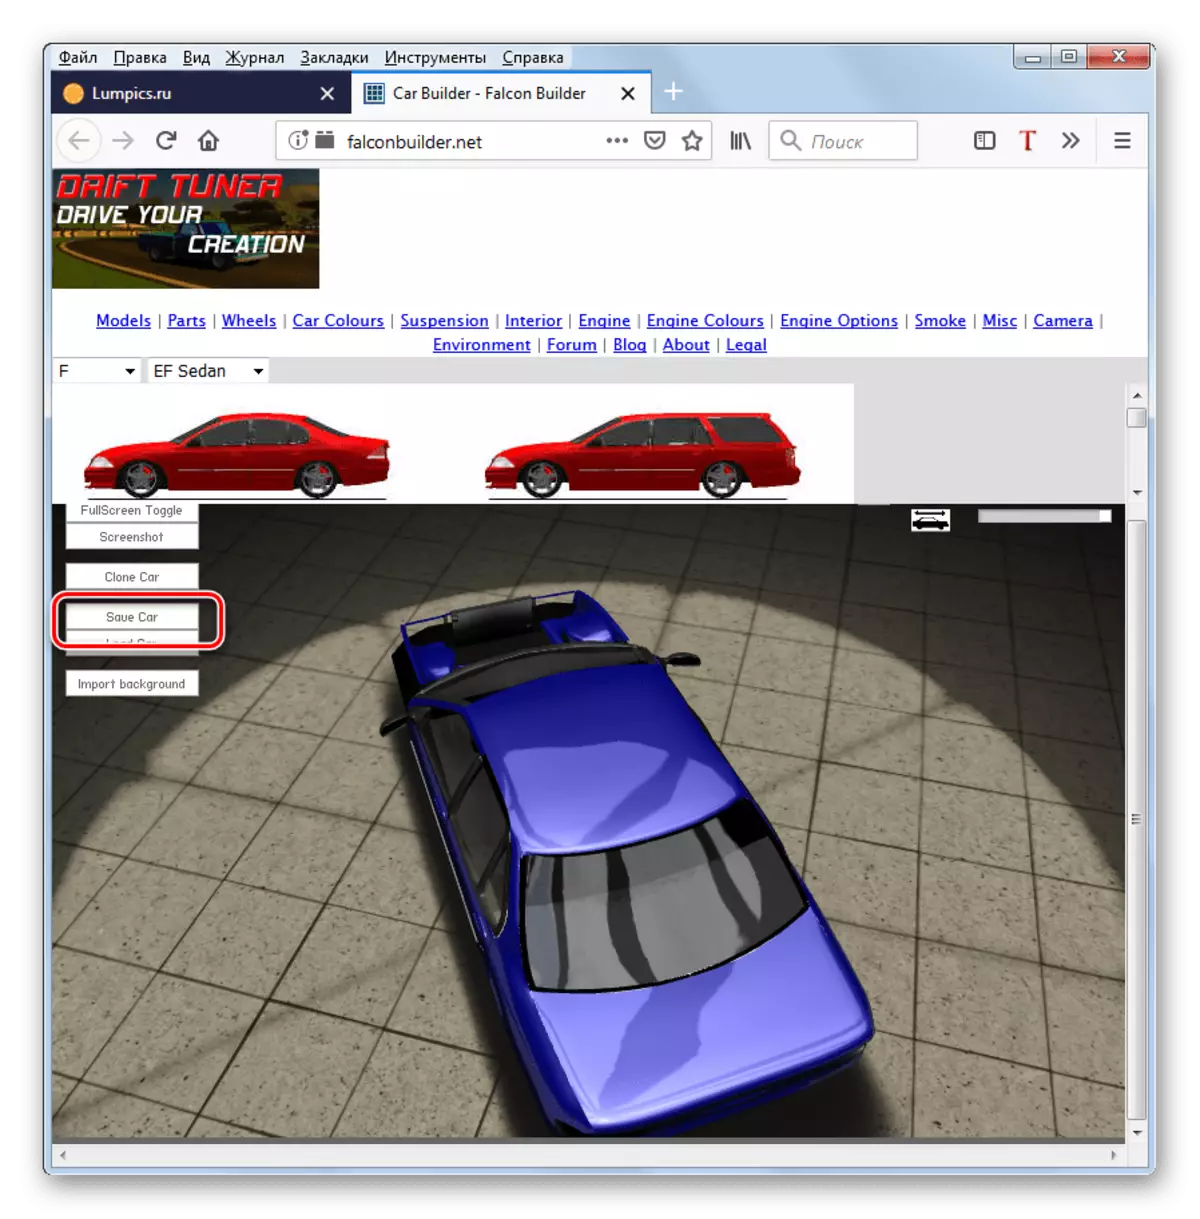 Mozilla Firefox tarayıcısındaki Falconbuilder web sitesinde ortaya çıkan araba görüntüsünün korunmasına geçiş